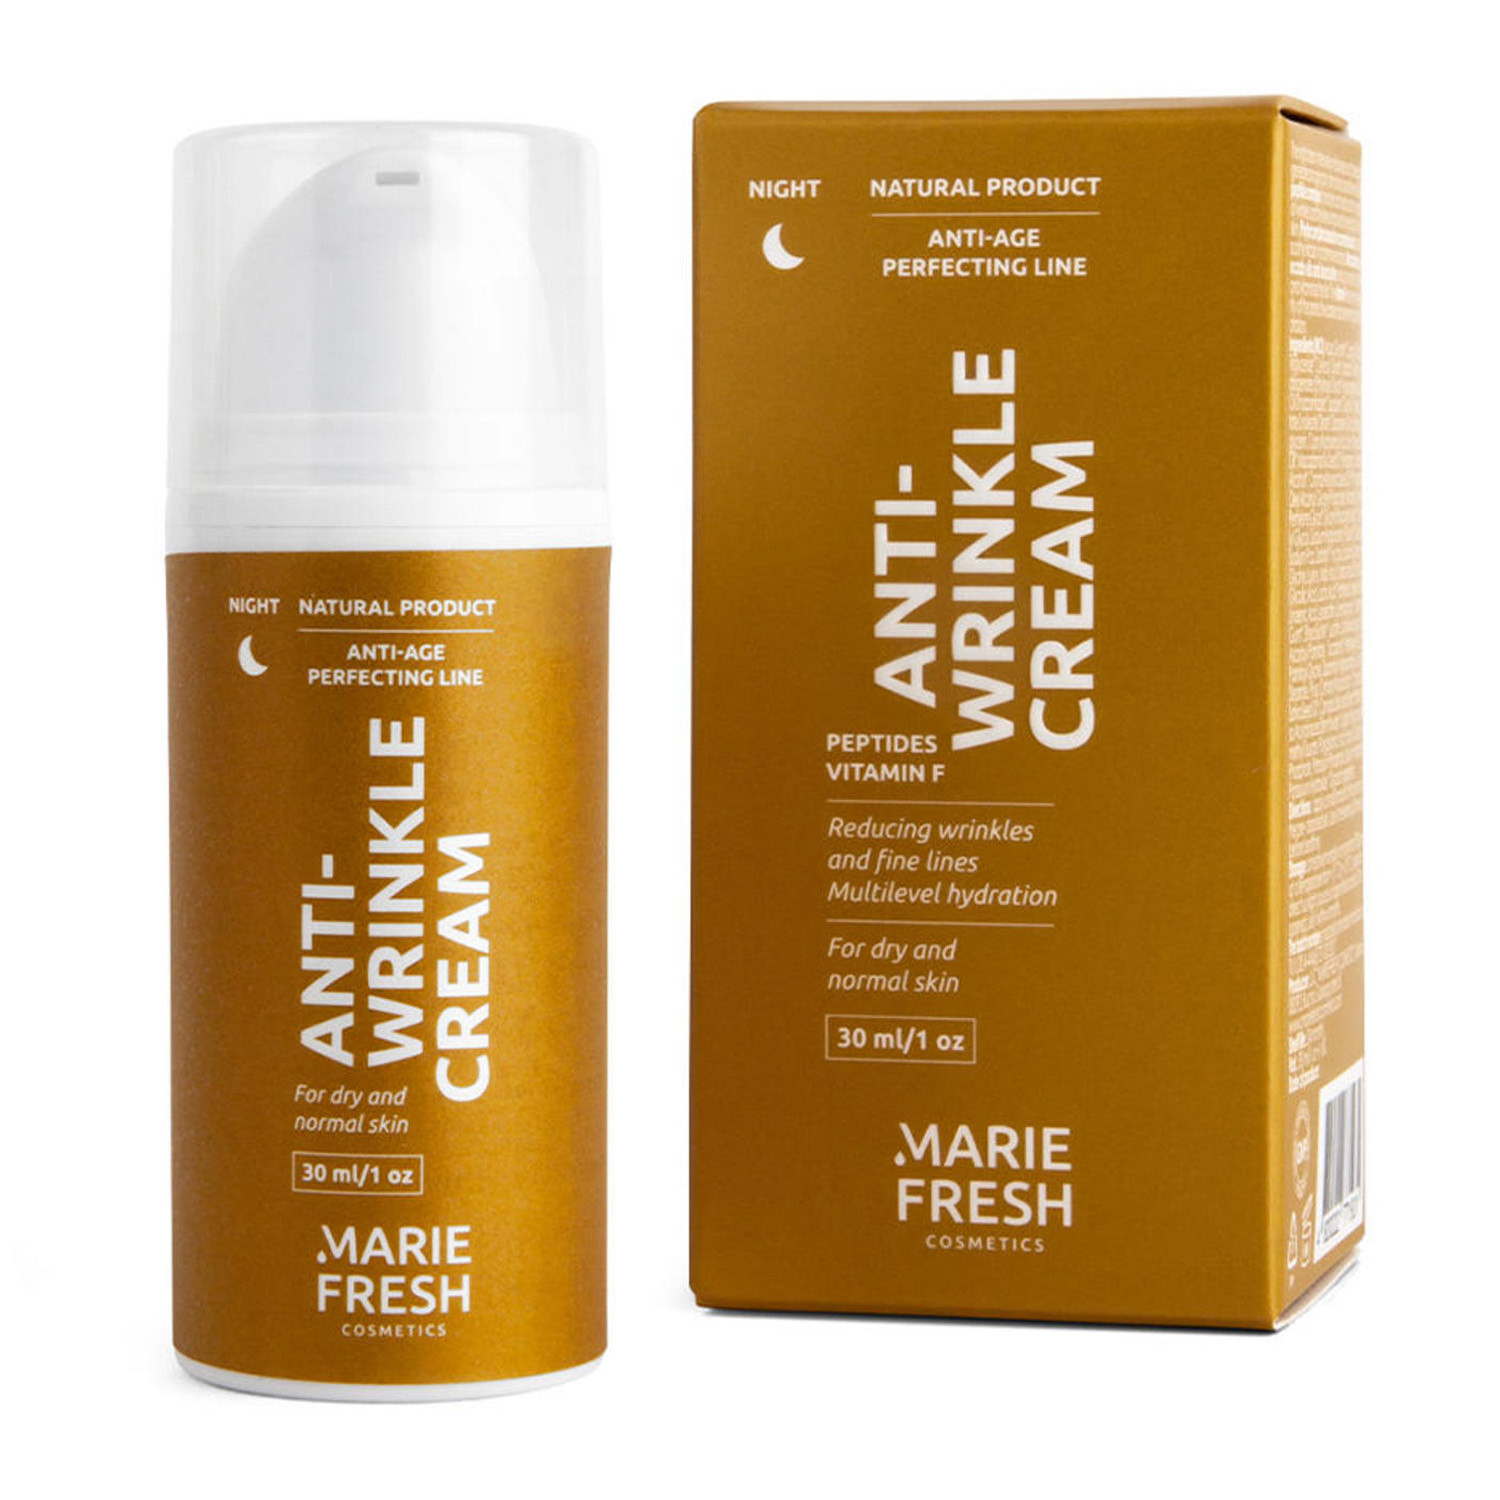 Marie Fresh Cosmetics Ночной крем против морщин для сухой и нормальной кожи